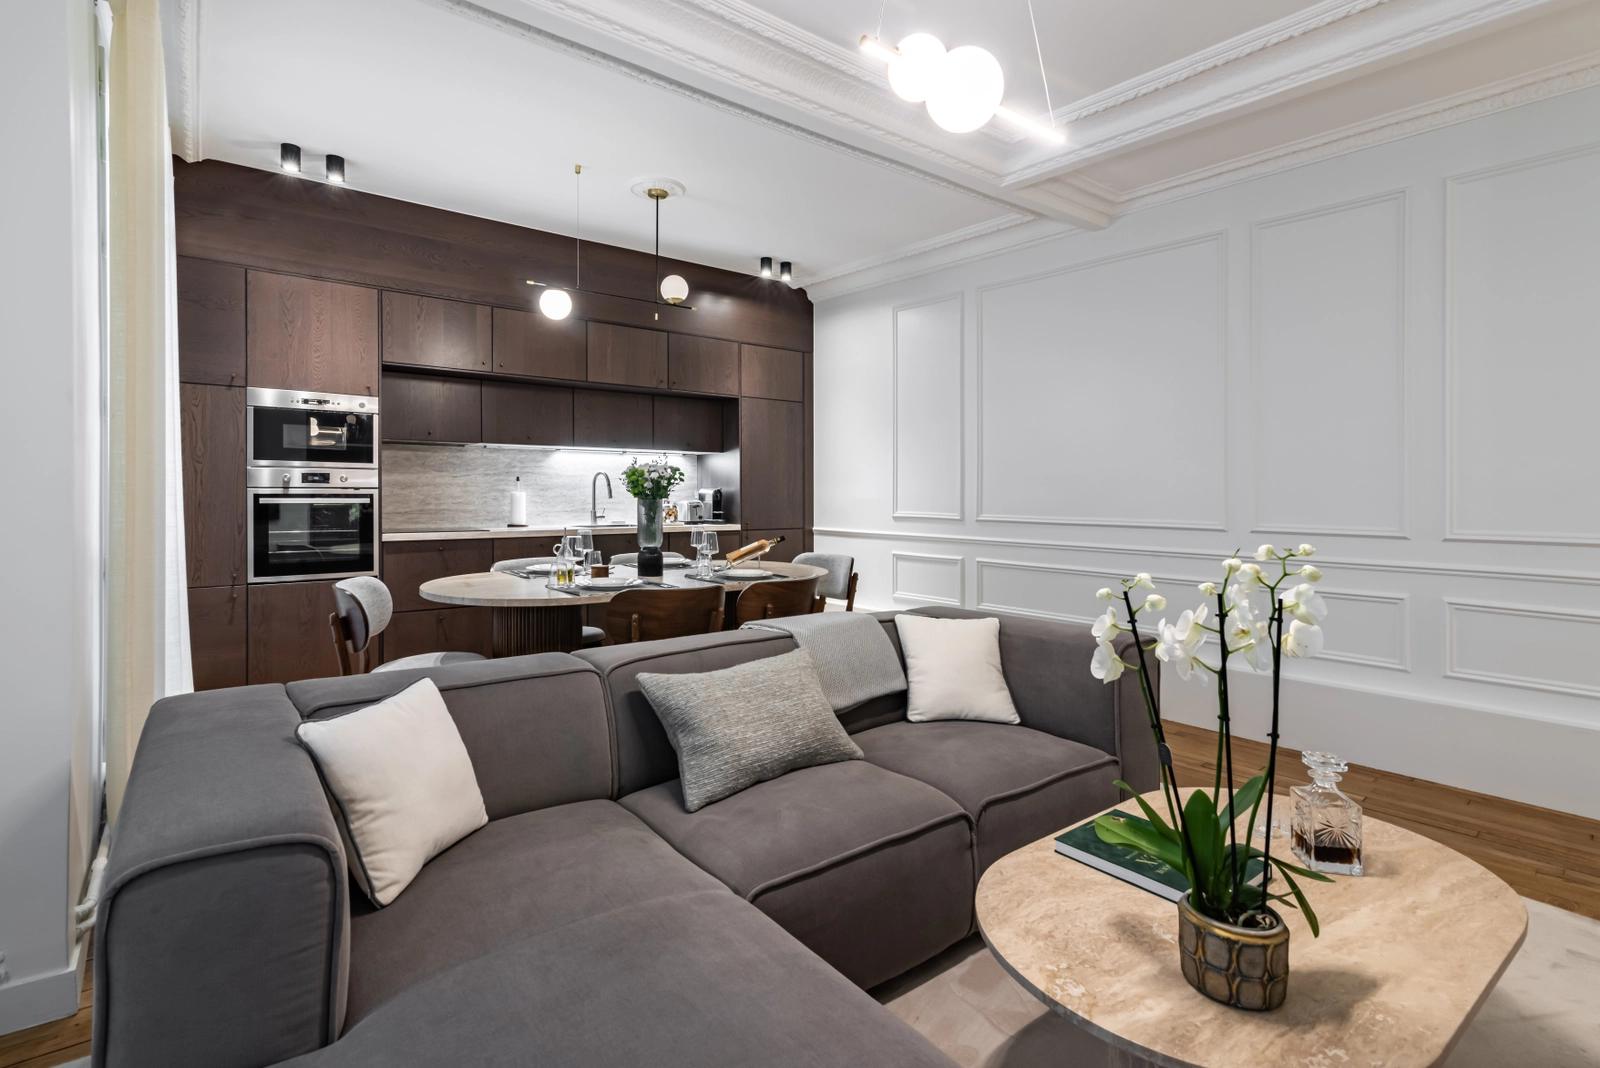 Salon dans Appartement refait par architecte - Trocadéro - 2